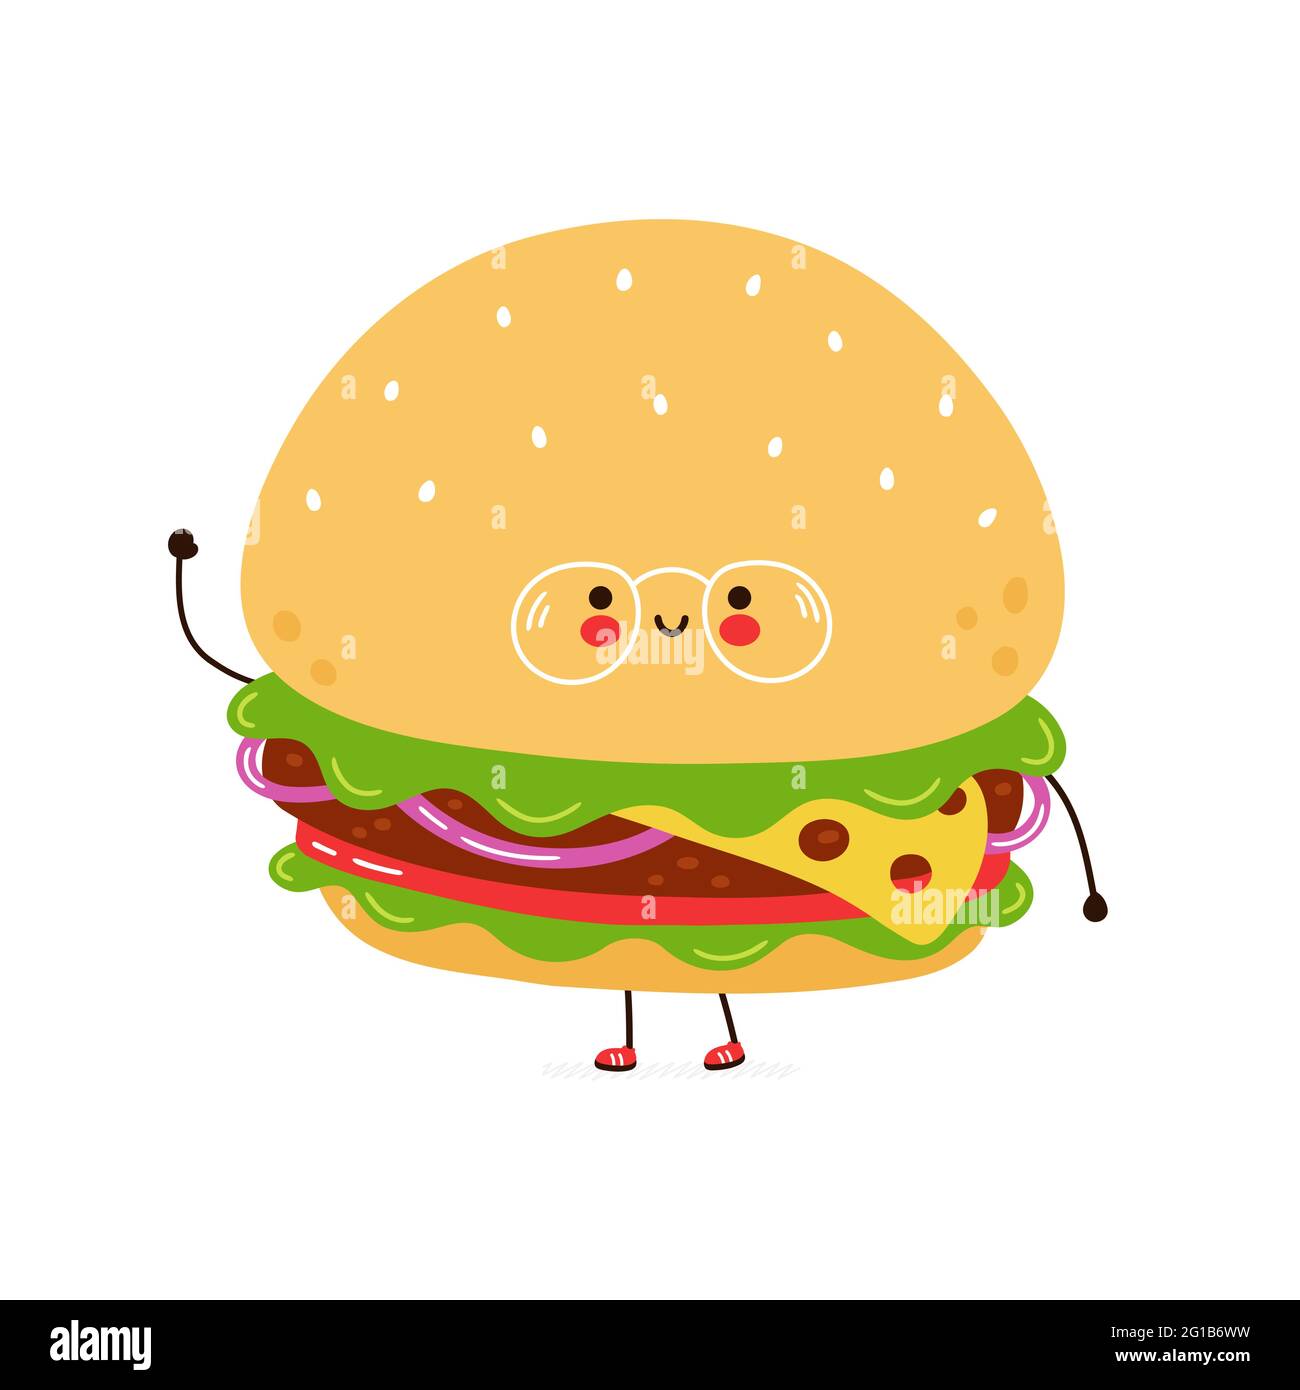 Simpatico hamburger divertente in caratteri bicchieri. Icona raffigurante il carattere kawaii del fumetto disegnato a mano del vettore. Isolato su sfondo bianco. Concetto di carattere Burger Illustrazione Vettoriale